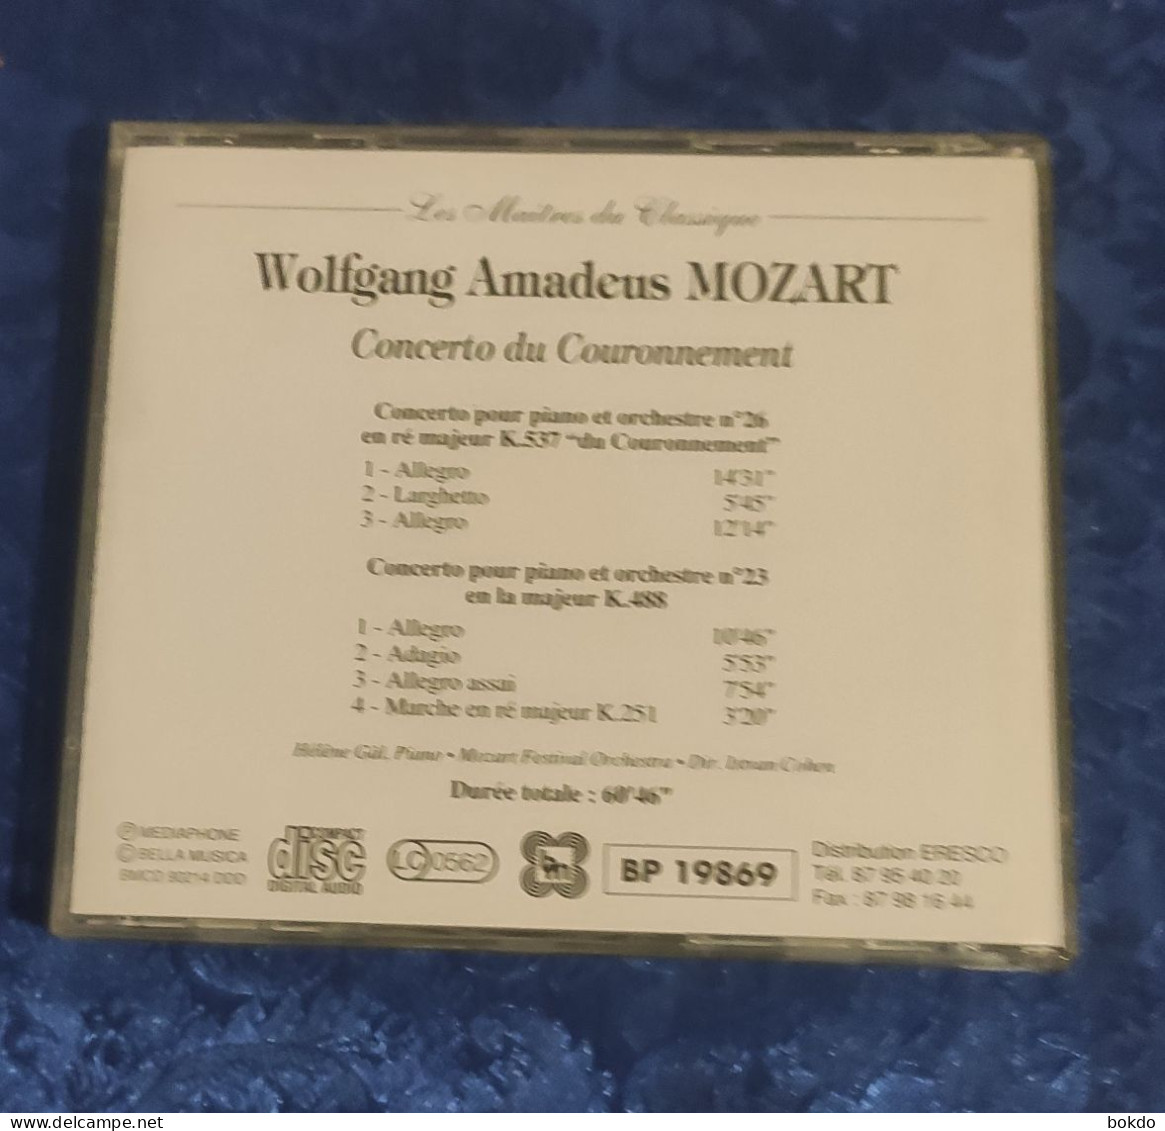 Mozart - Concerto Du Couronnement - Classical